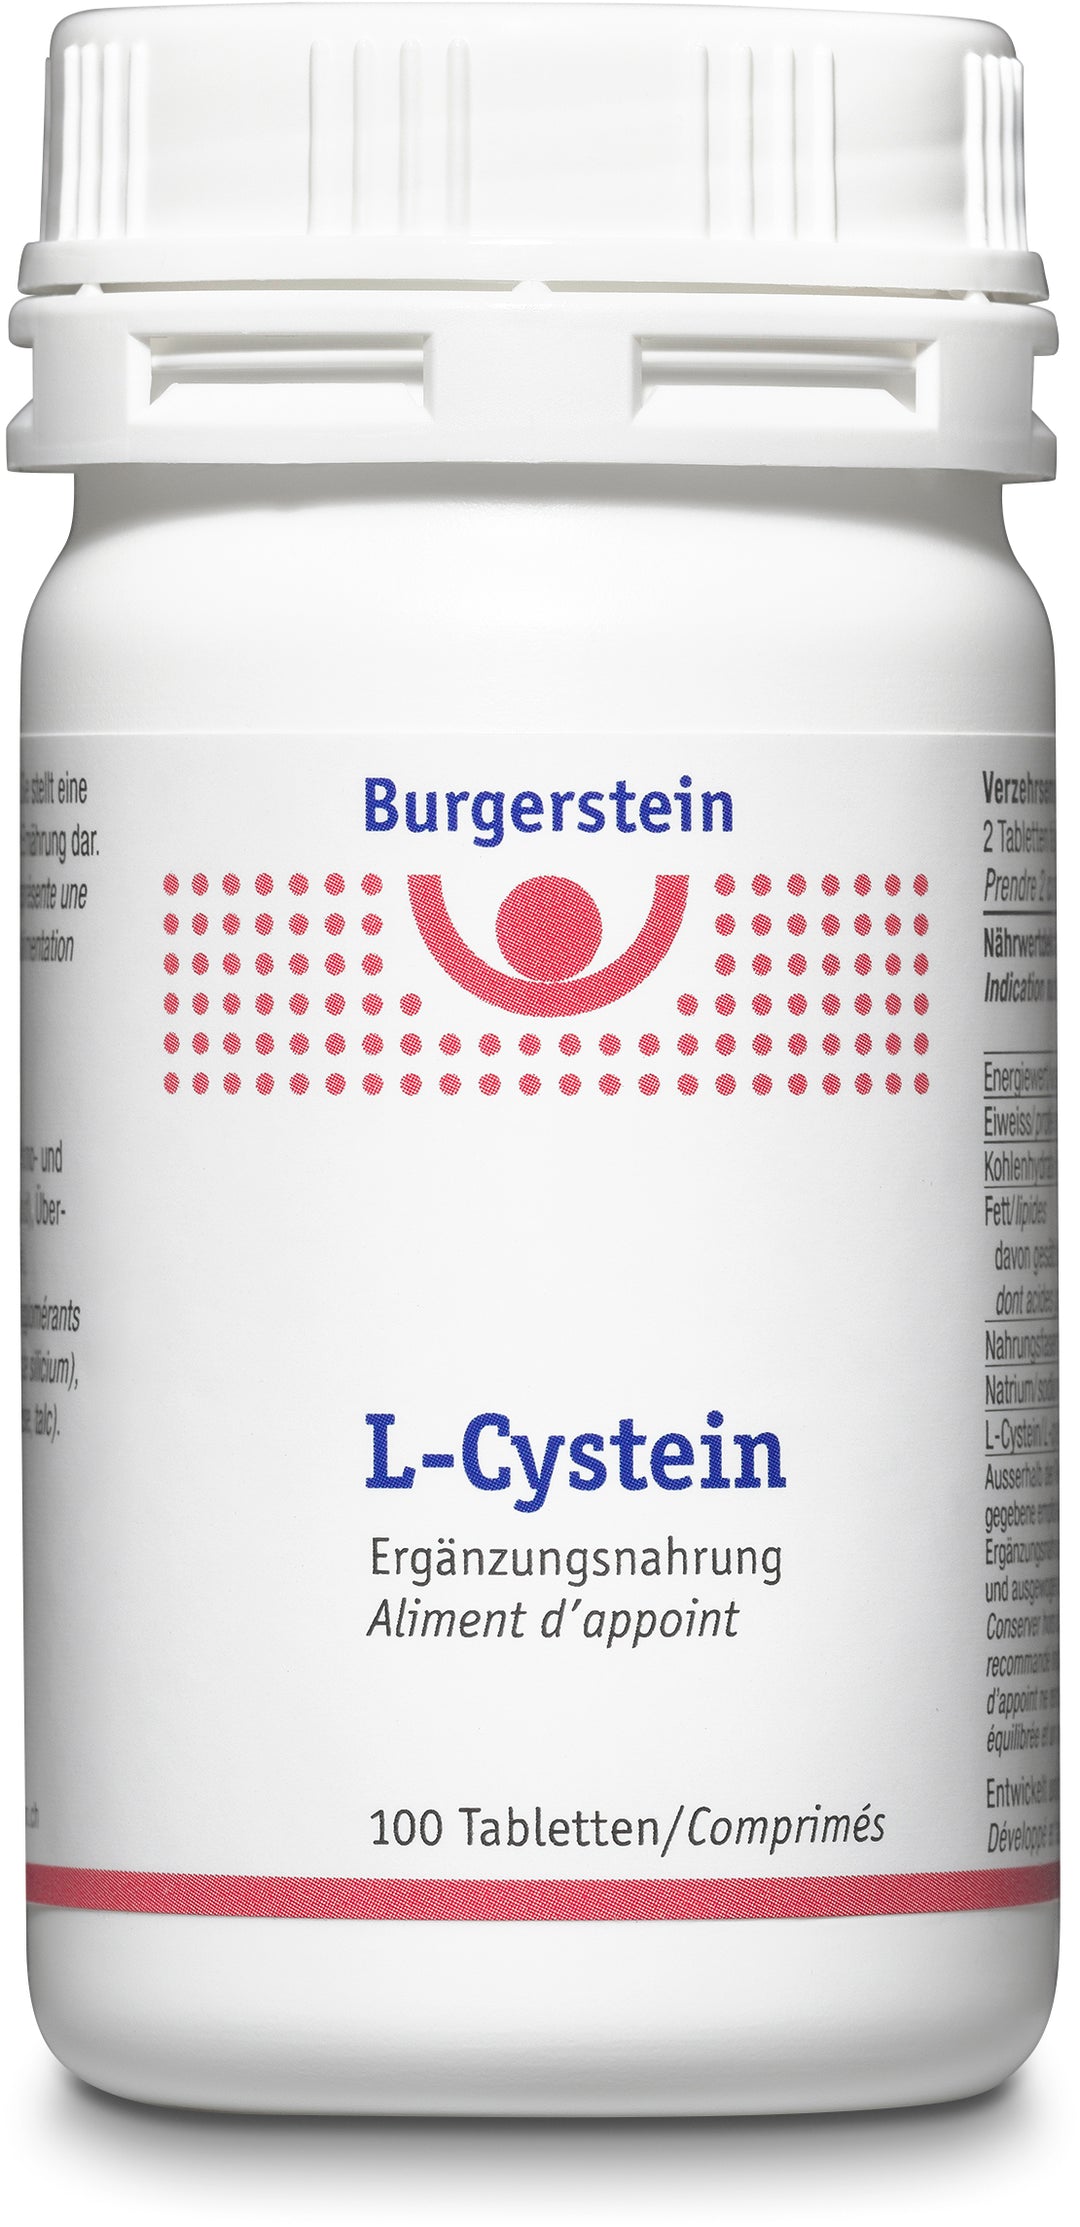 BURGERSTEIN L-Cystein Tabletten Box 100 Stück